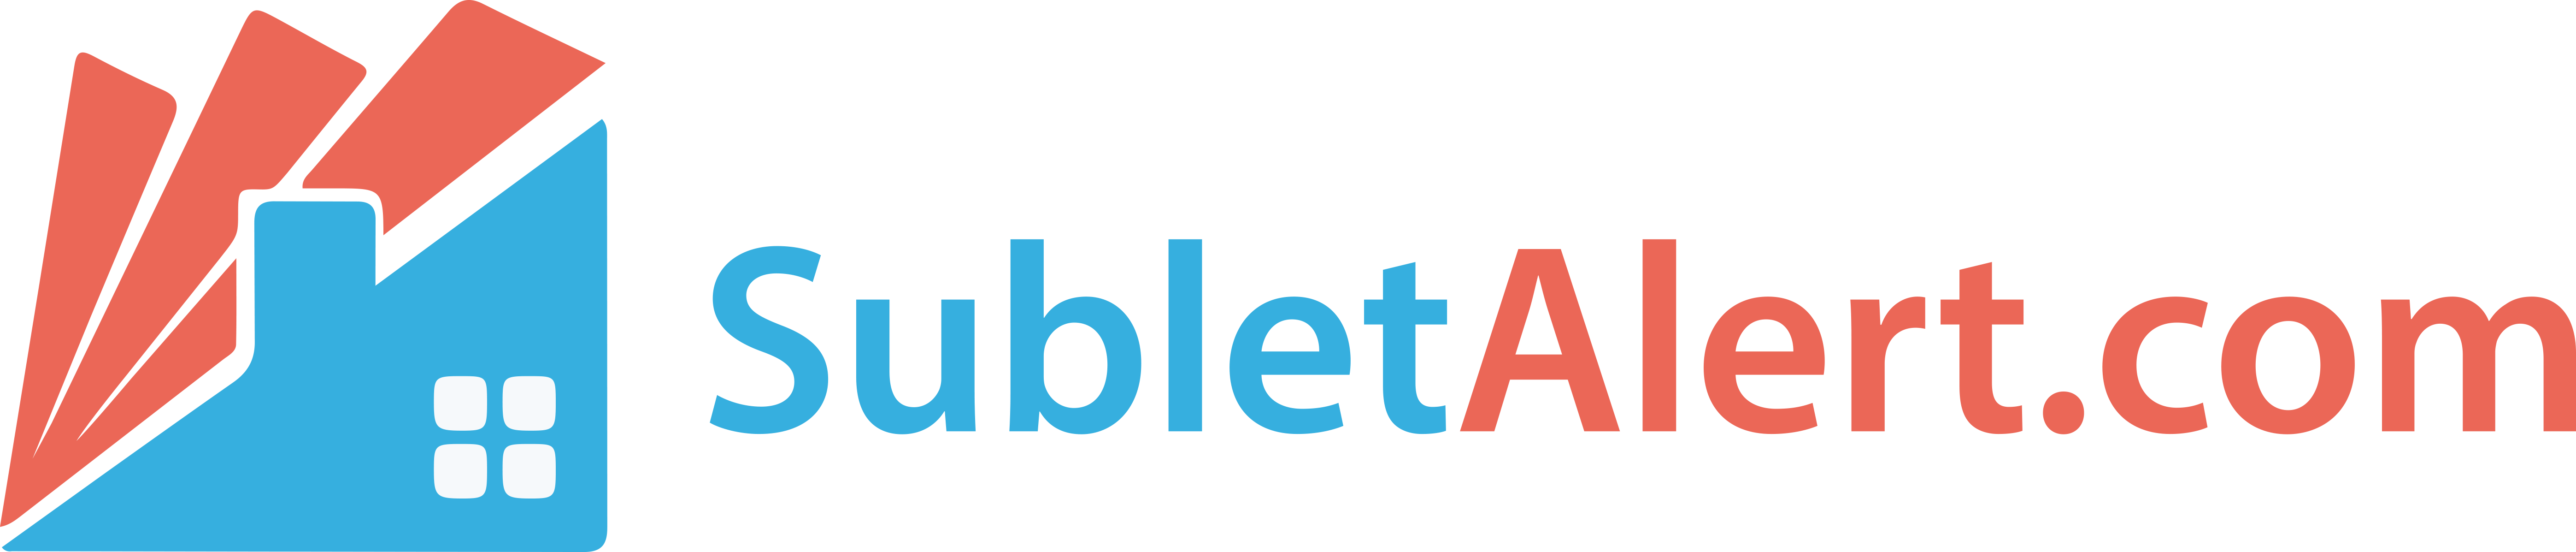 Sublet-Alert-Logo-2.png